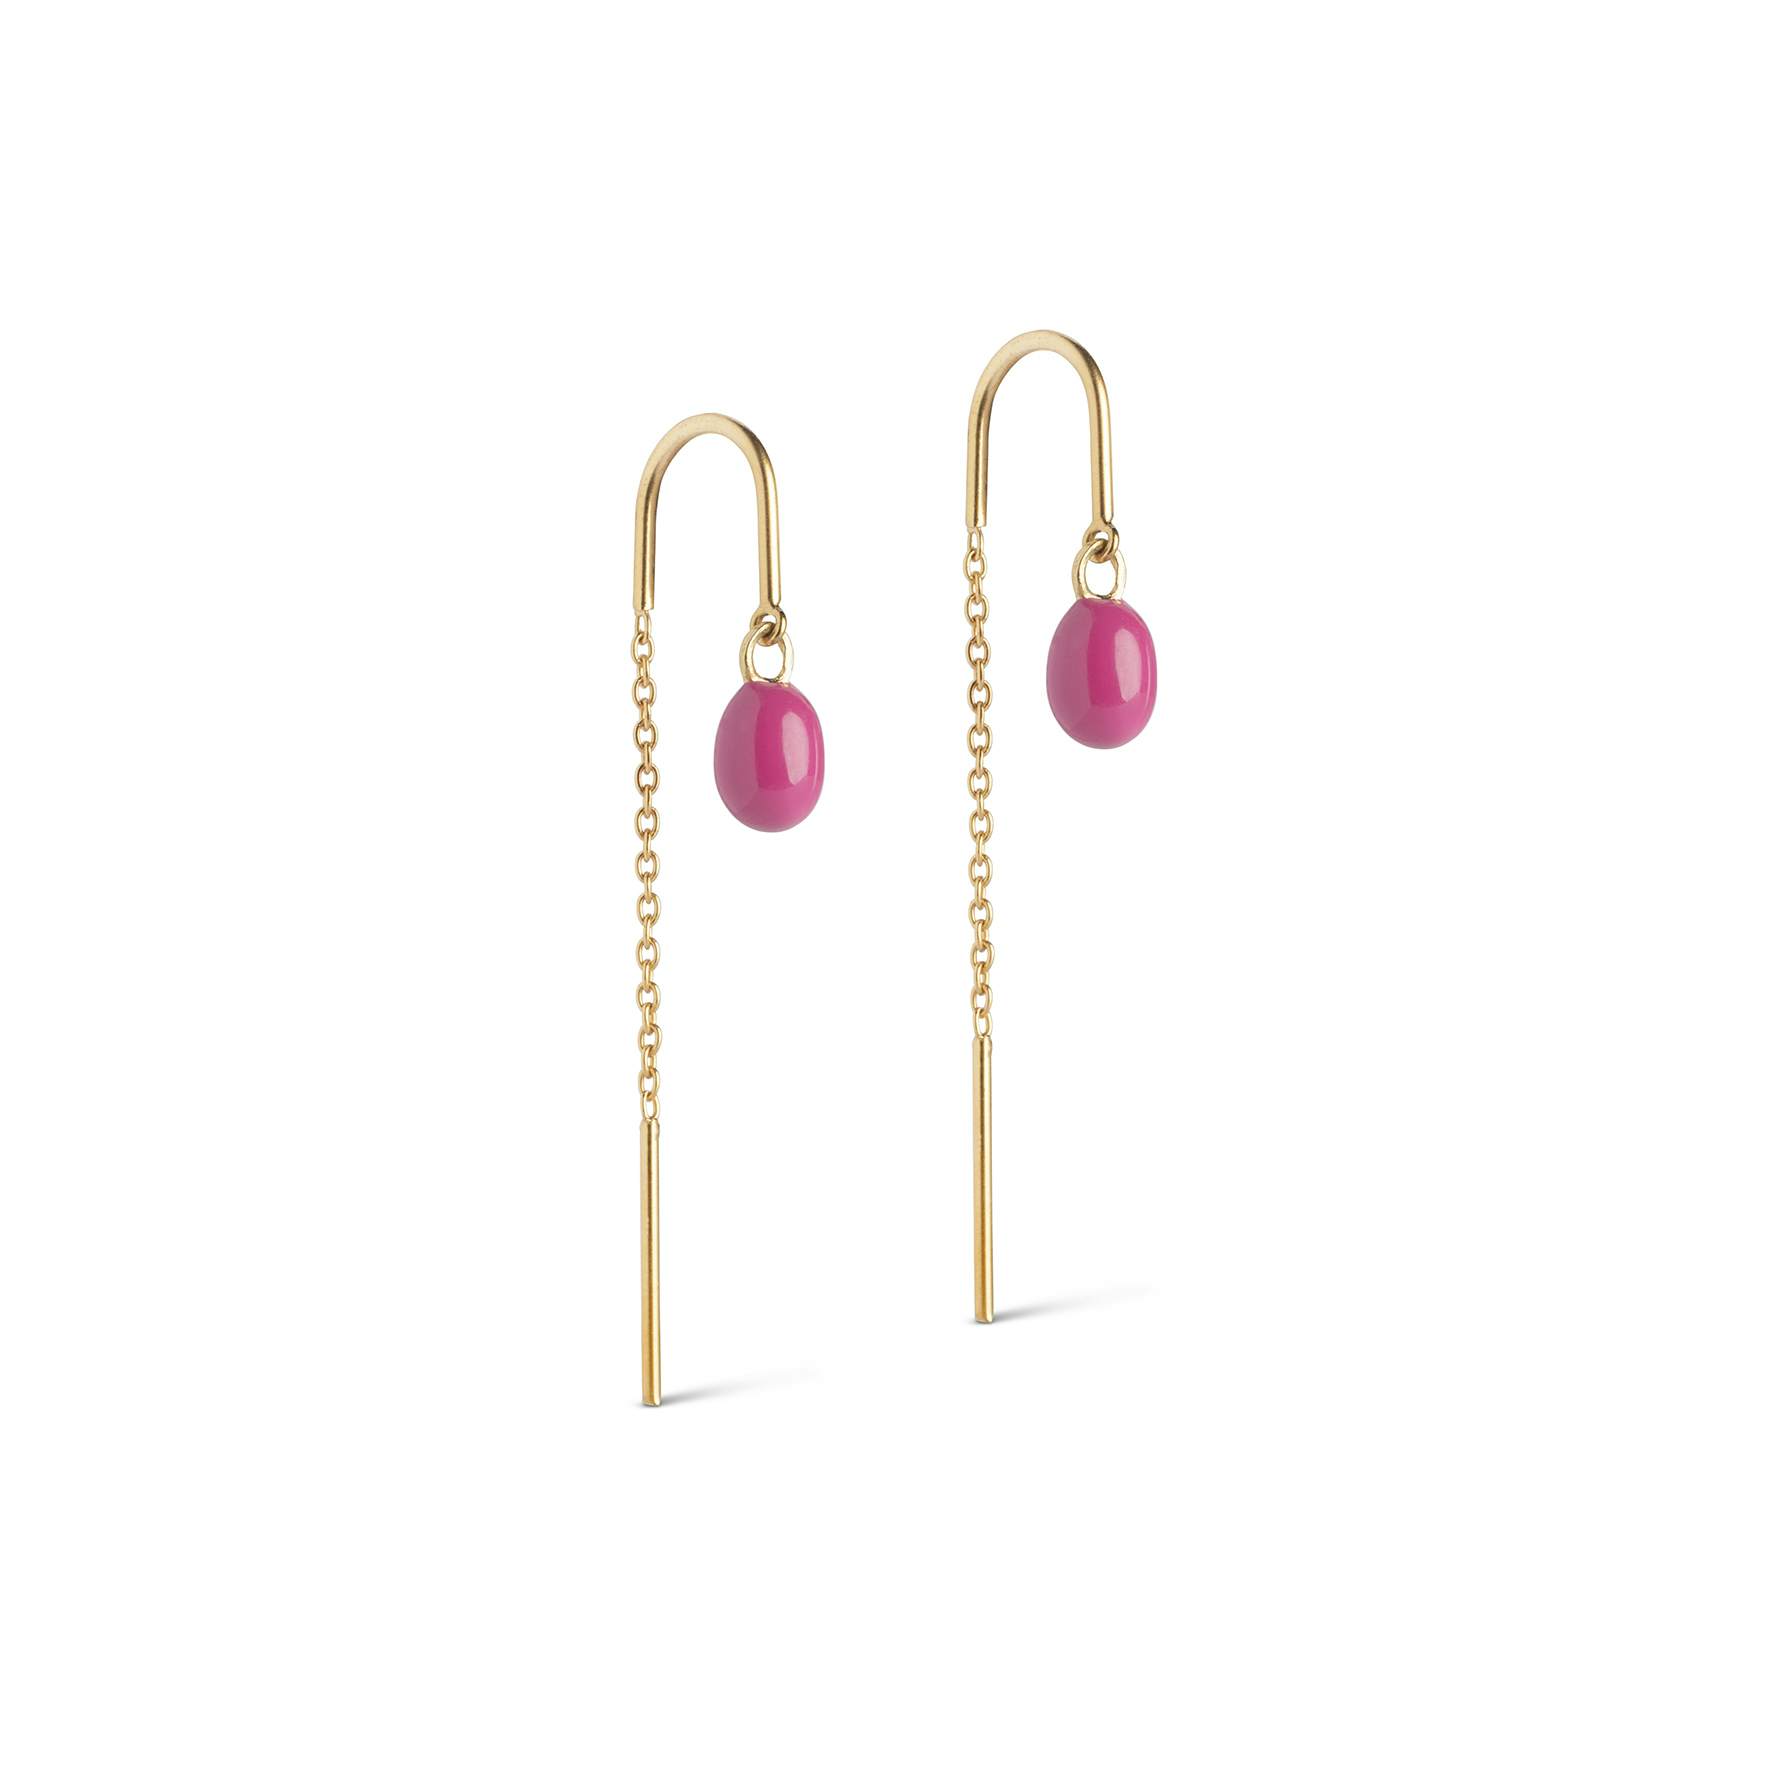 Eleanor Earrings Fuchsia Pink von Enamel Copenhagen in Vergoldet-Silber Sterling 925